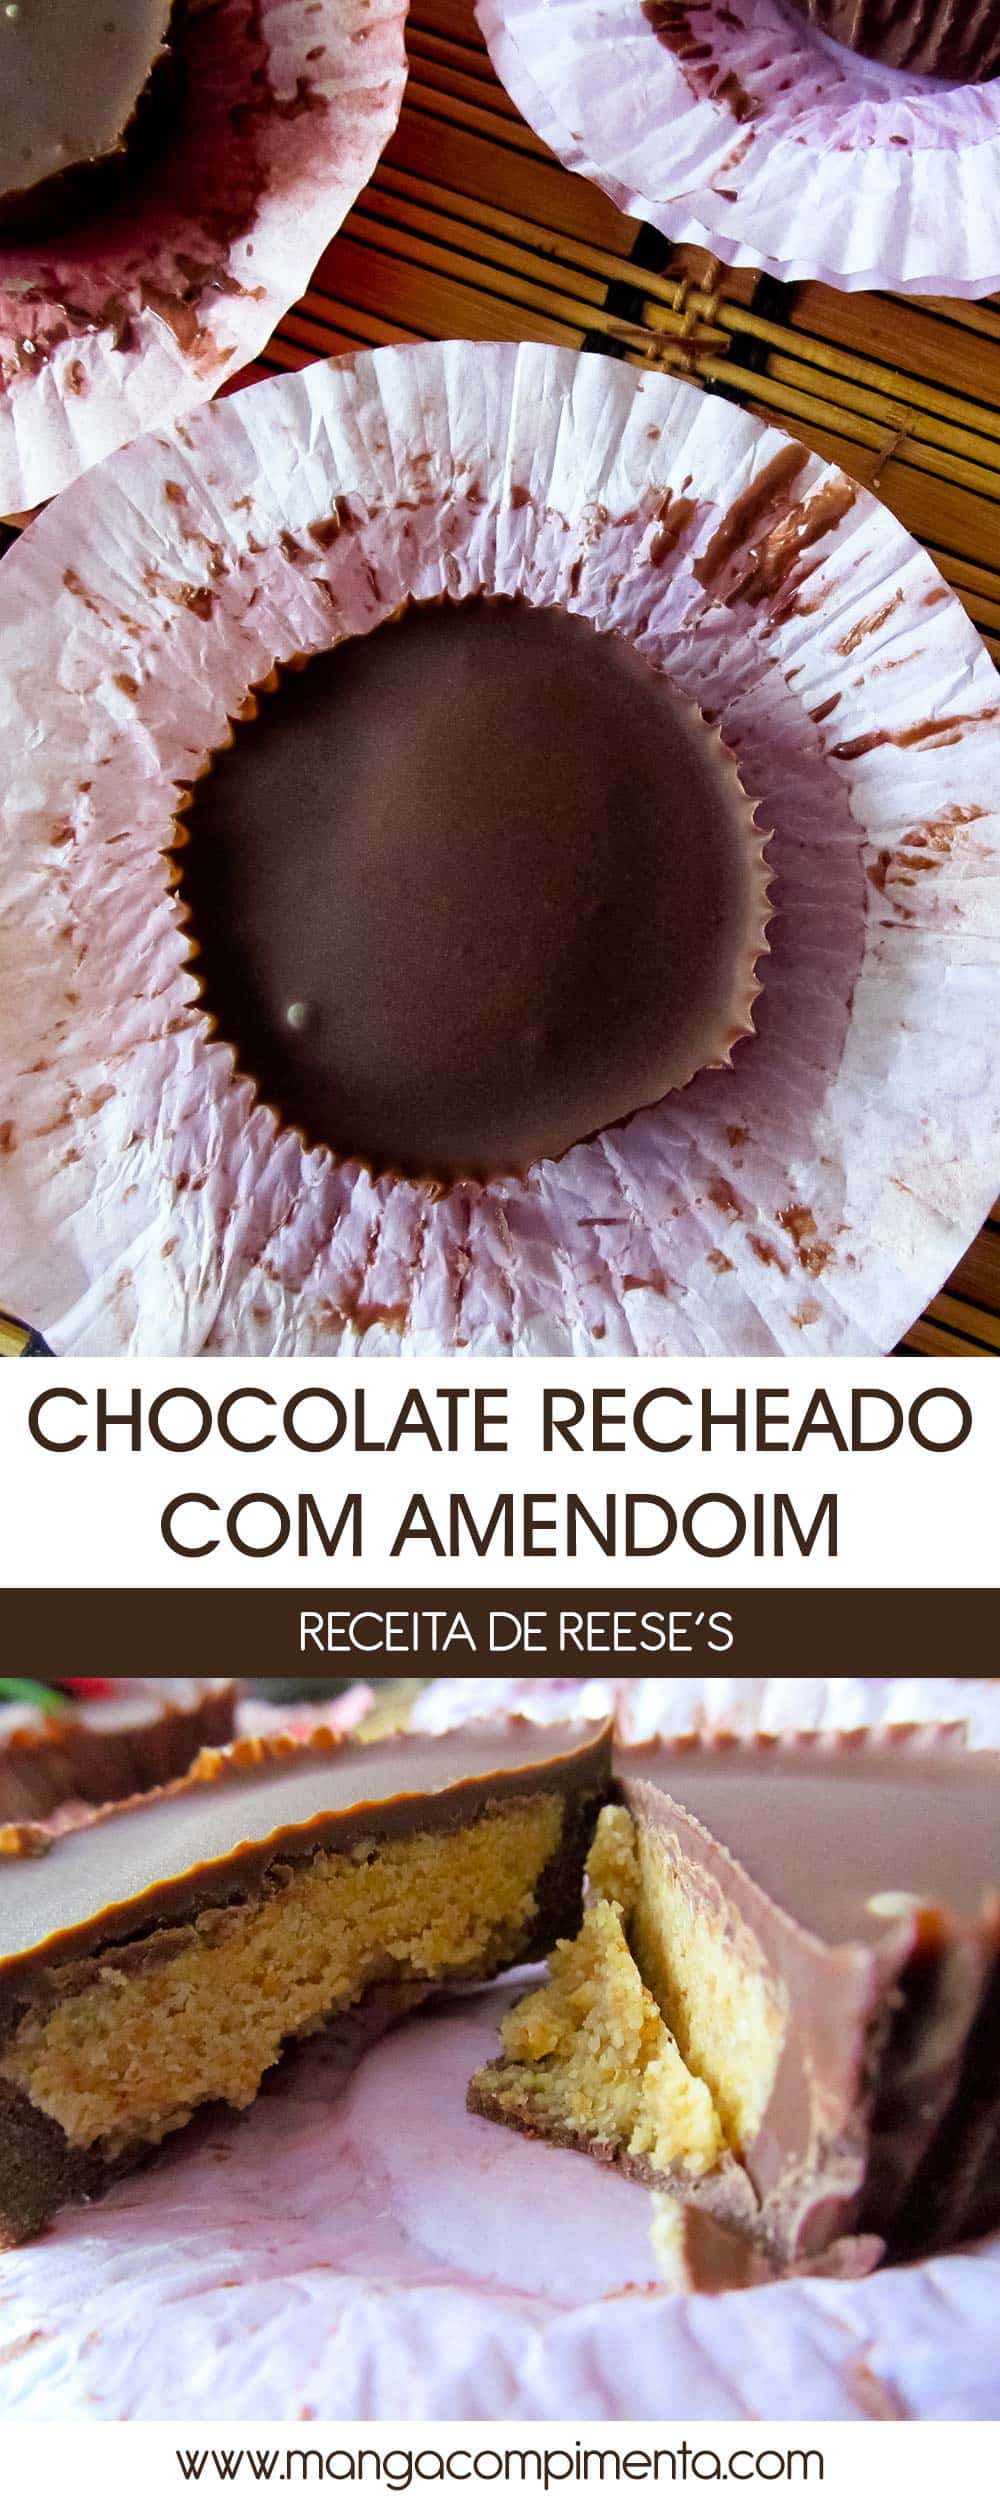 Reese’s - Chocolate recheado com Amendoim, uma verdadeira tentação!